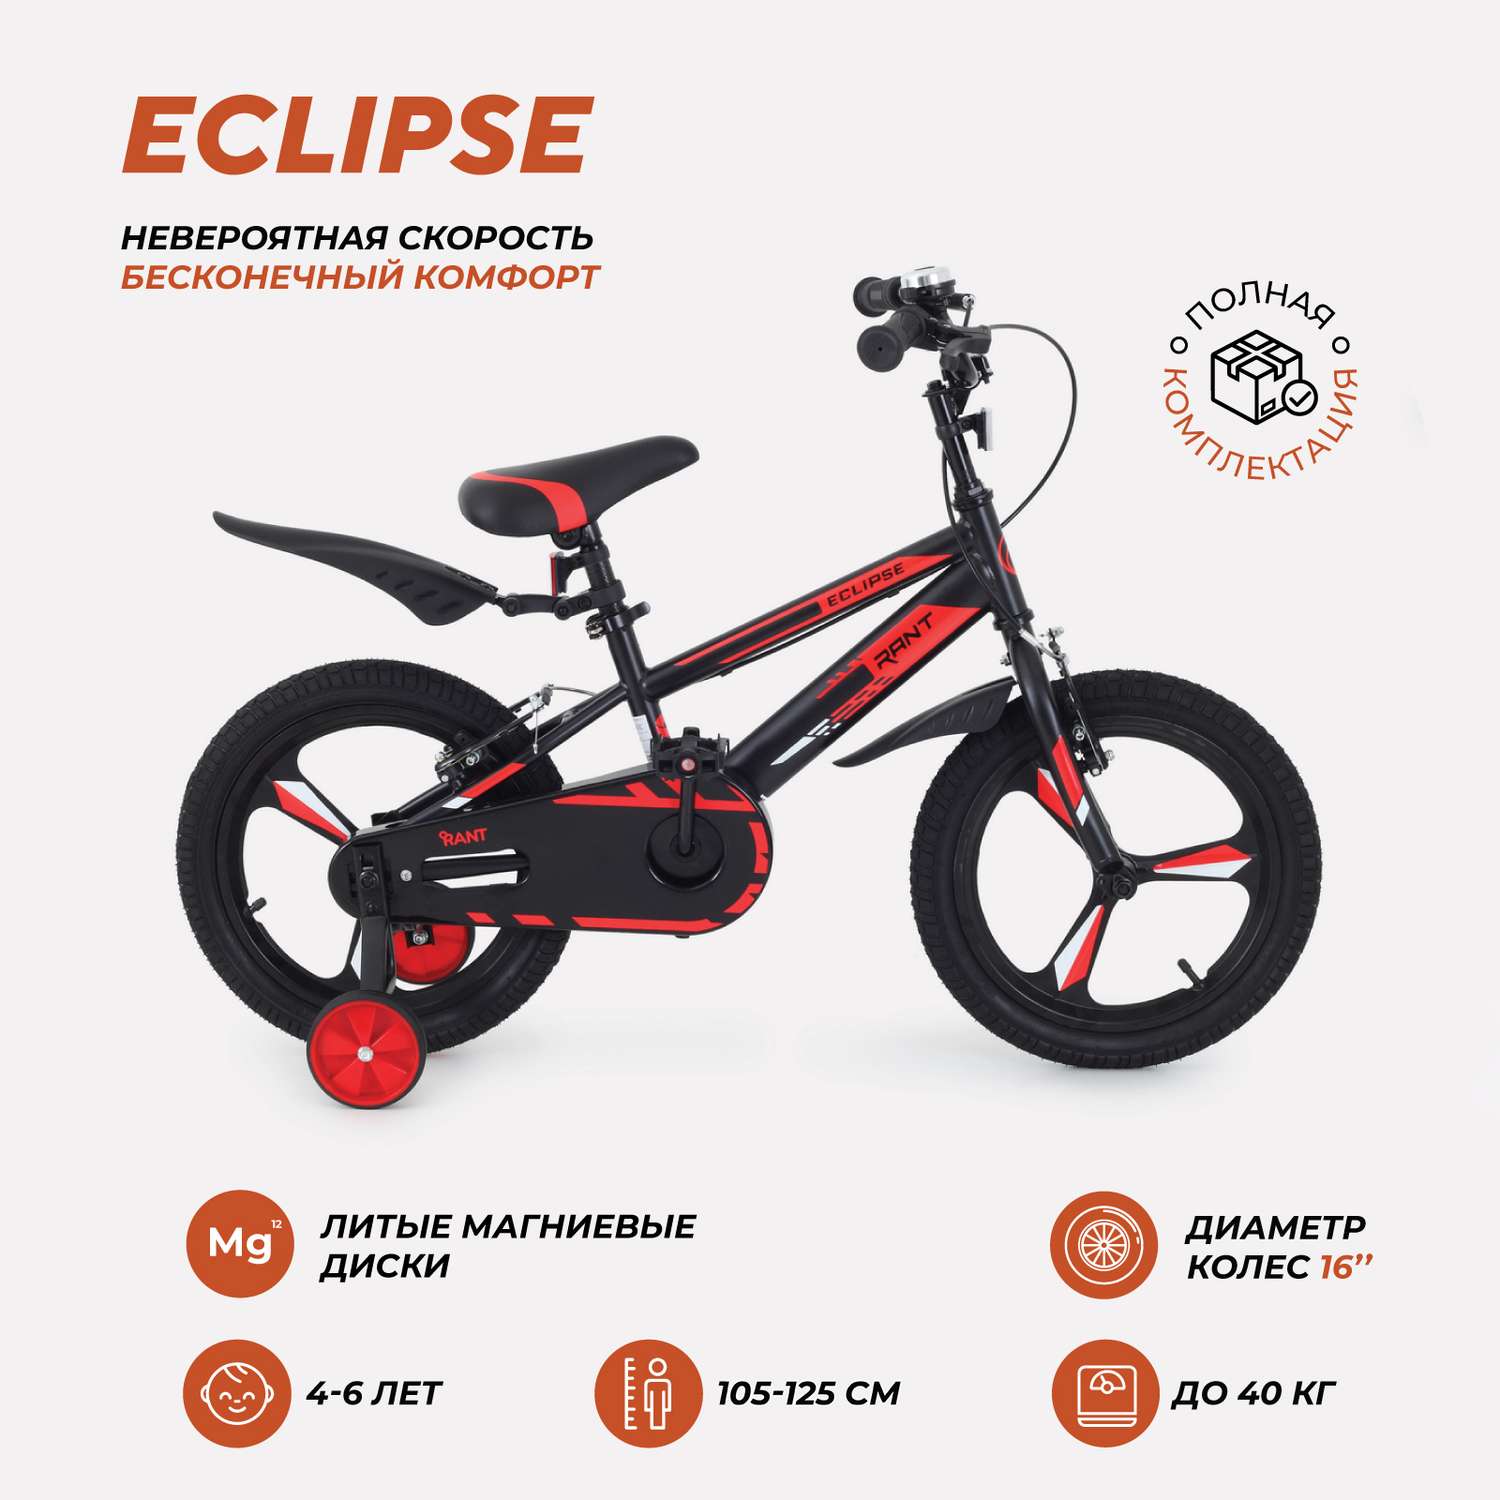 Велосипед 2-х колесный детский Rant Eclipse черно-красный 16 - фото 1